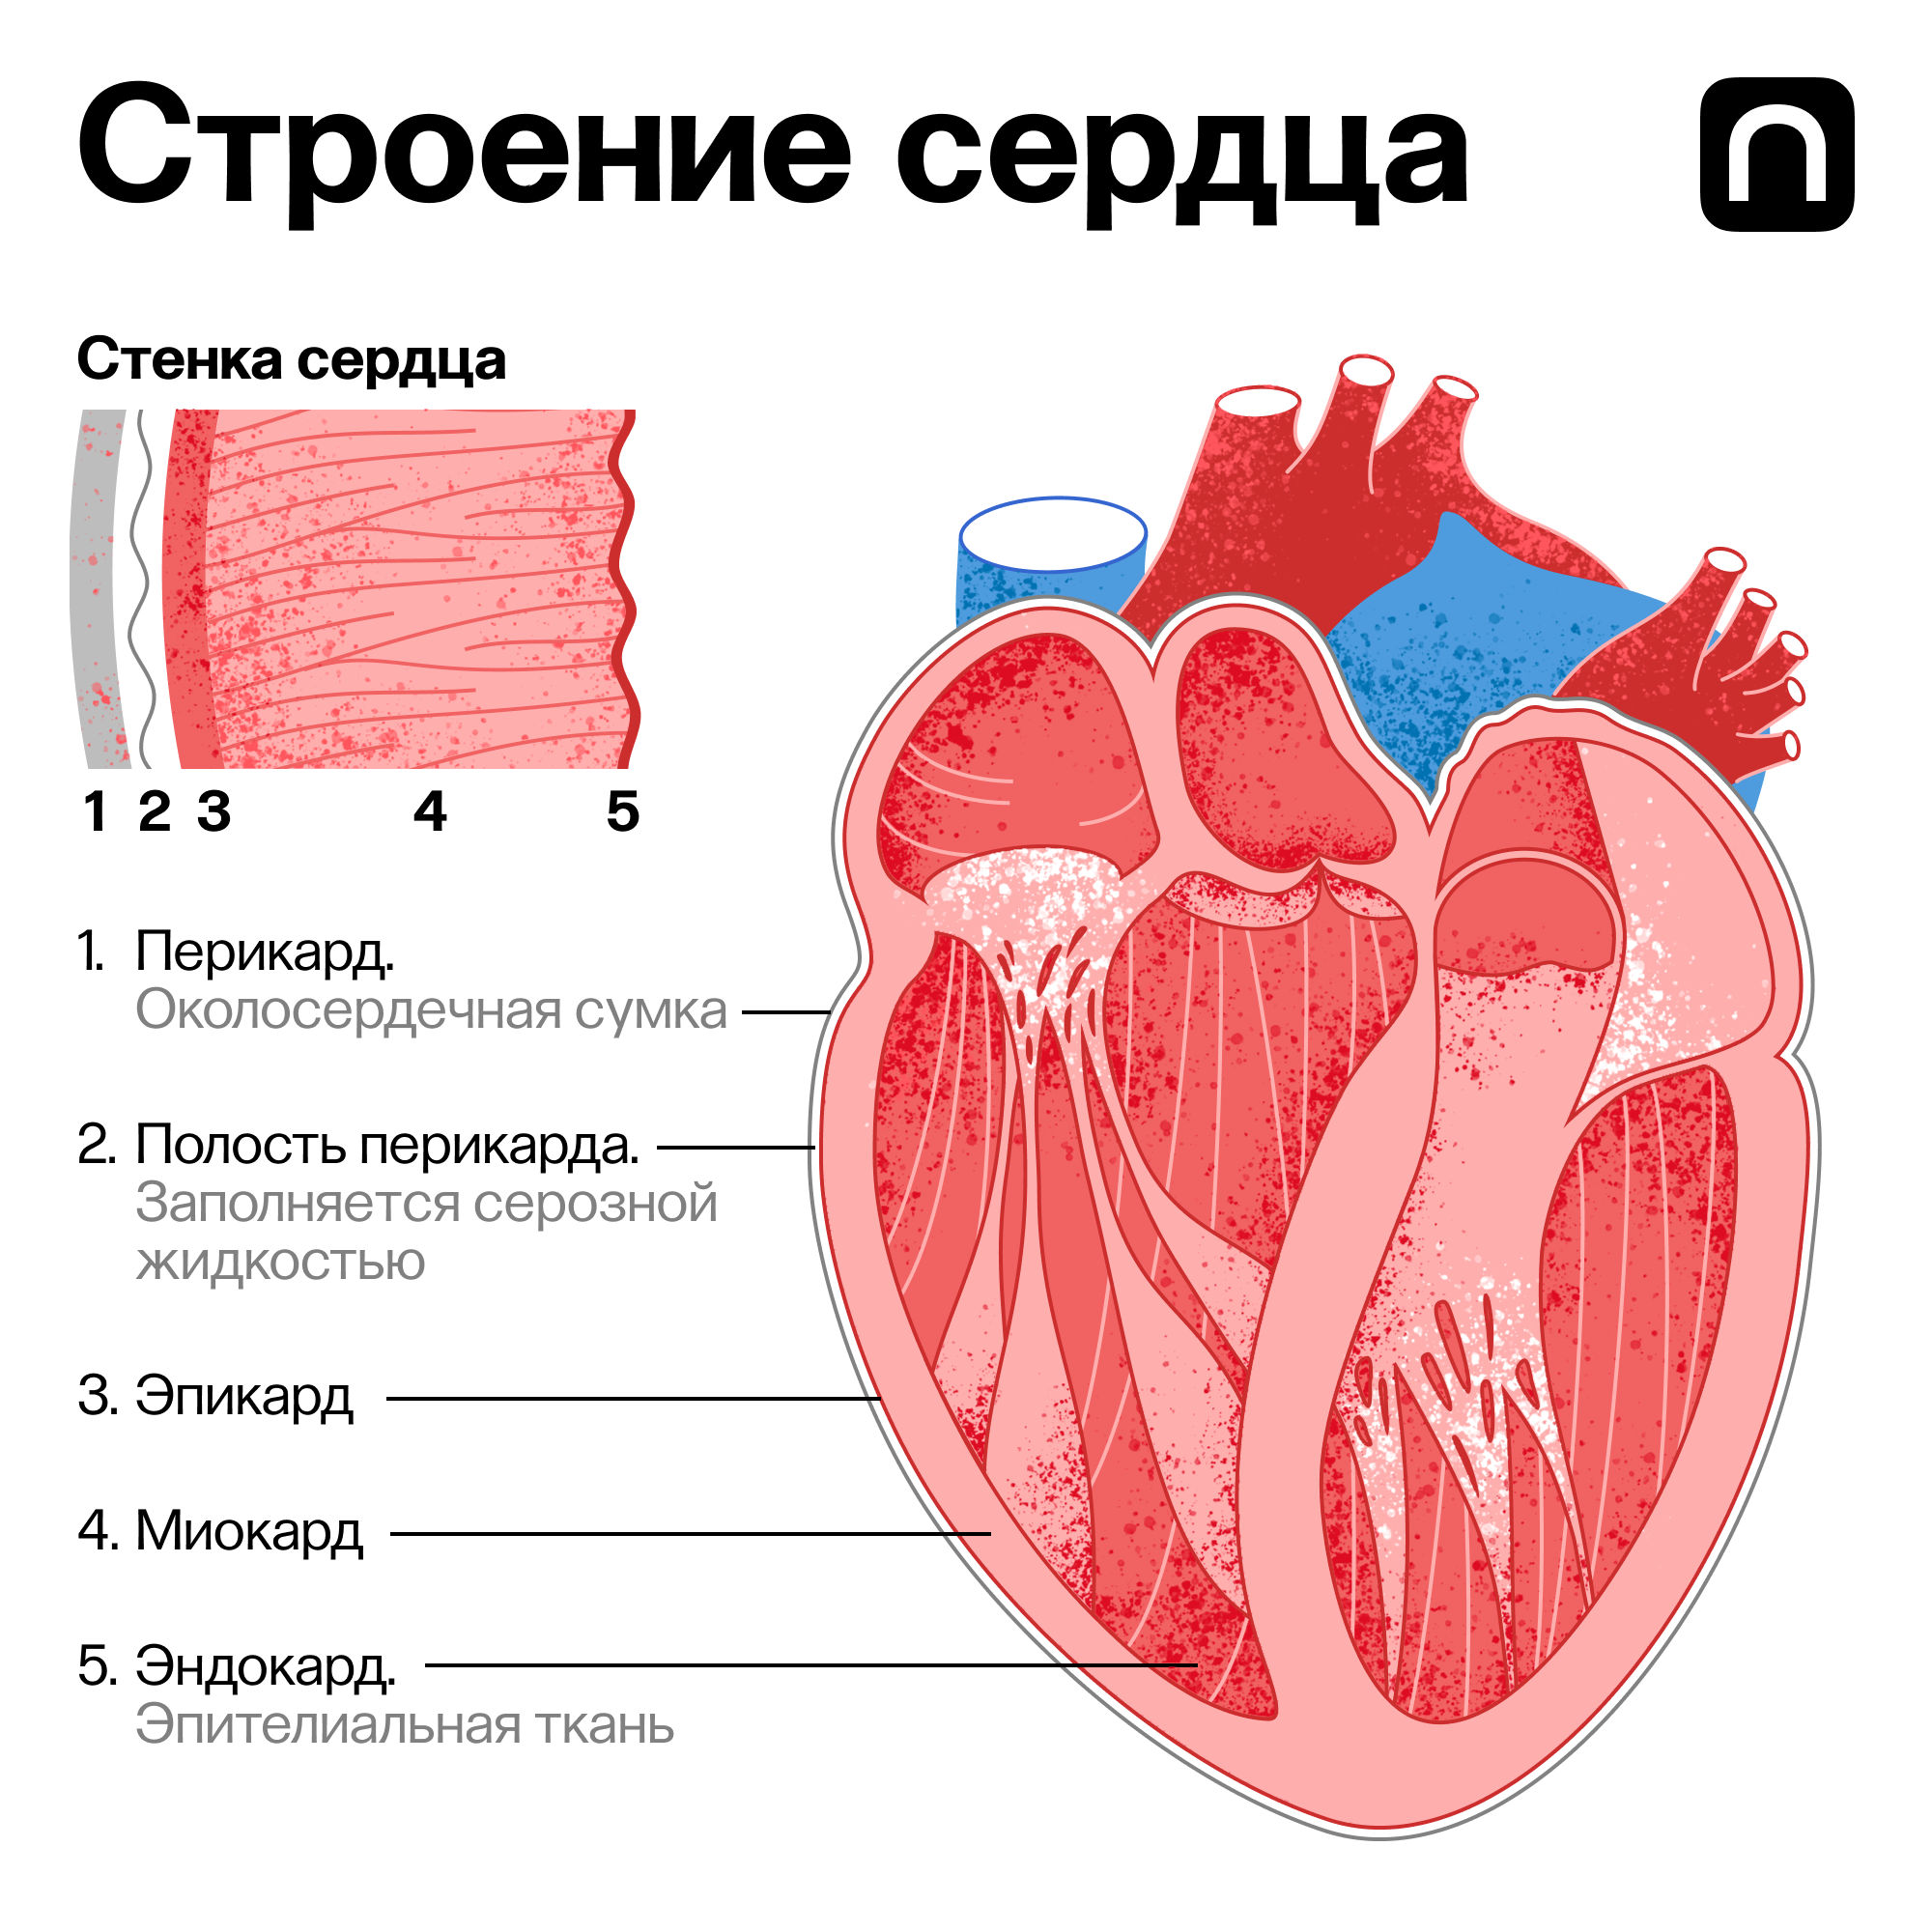 Сердце гонит. Строение сердца. Строение сердца человека. Сердце и сердечная мышца.